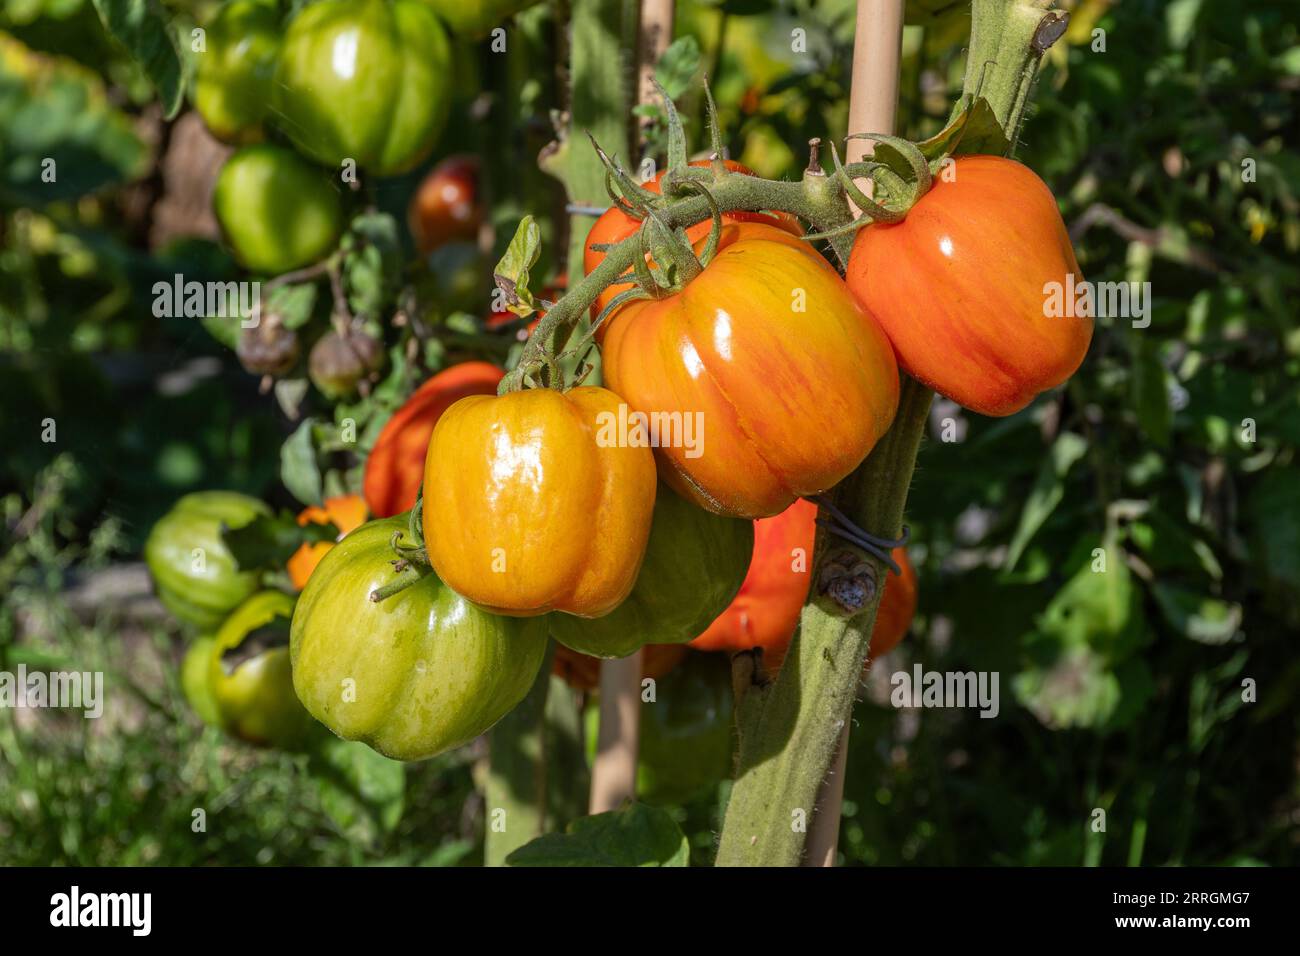 Gestreifte Stopfertomaten, die im Spätsommer in England, Großbritannien, an der Rebe wachsen, eine rote unbestimmte Tomatensorte mit gelben Streifen Stockfoto